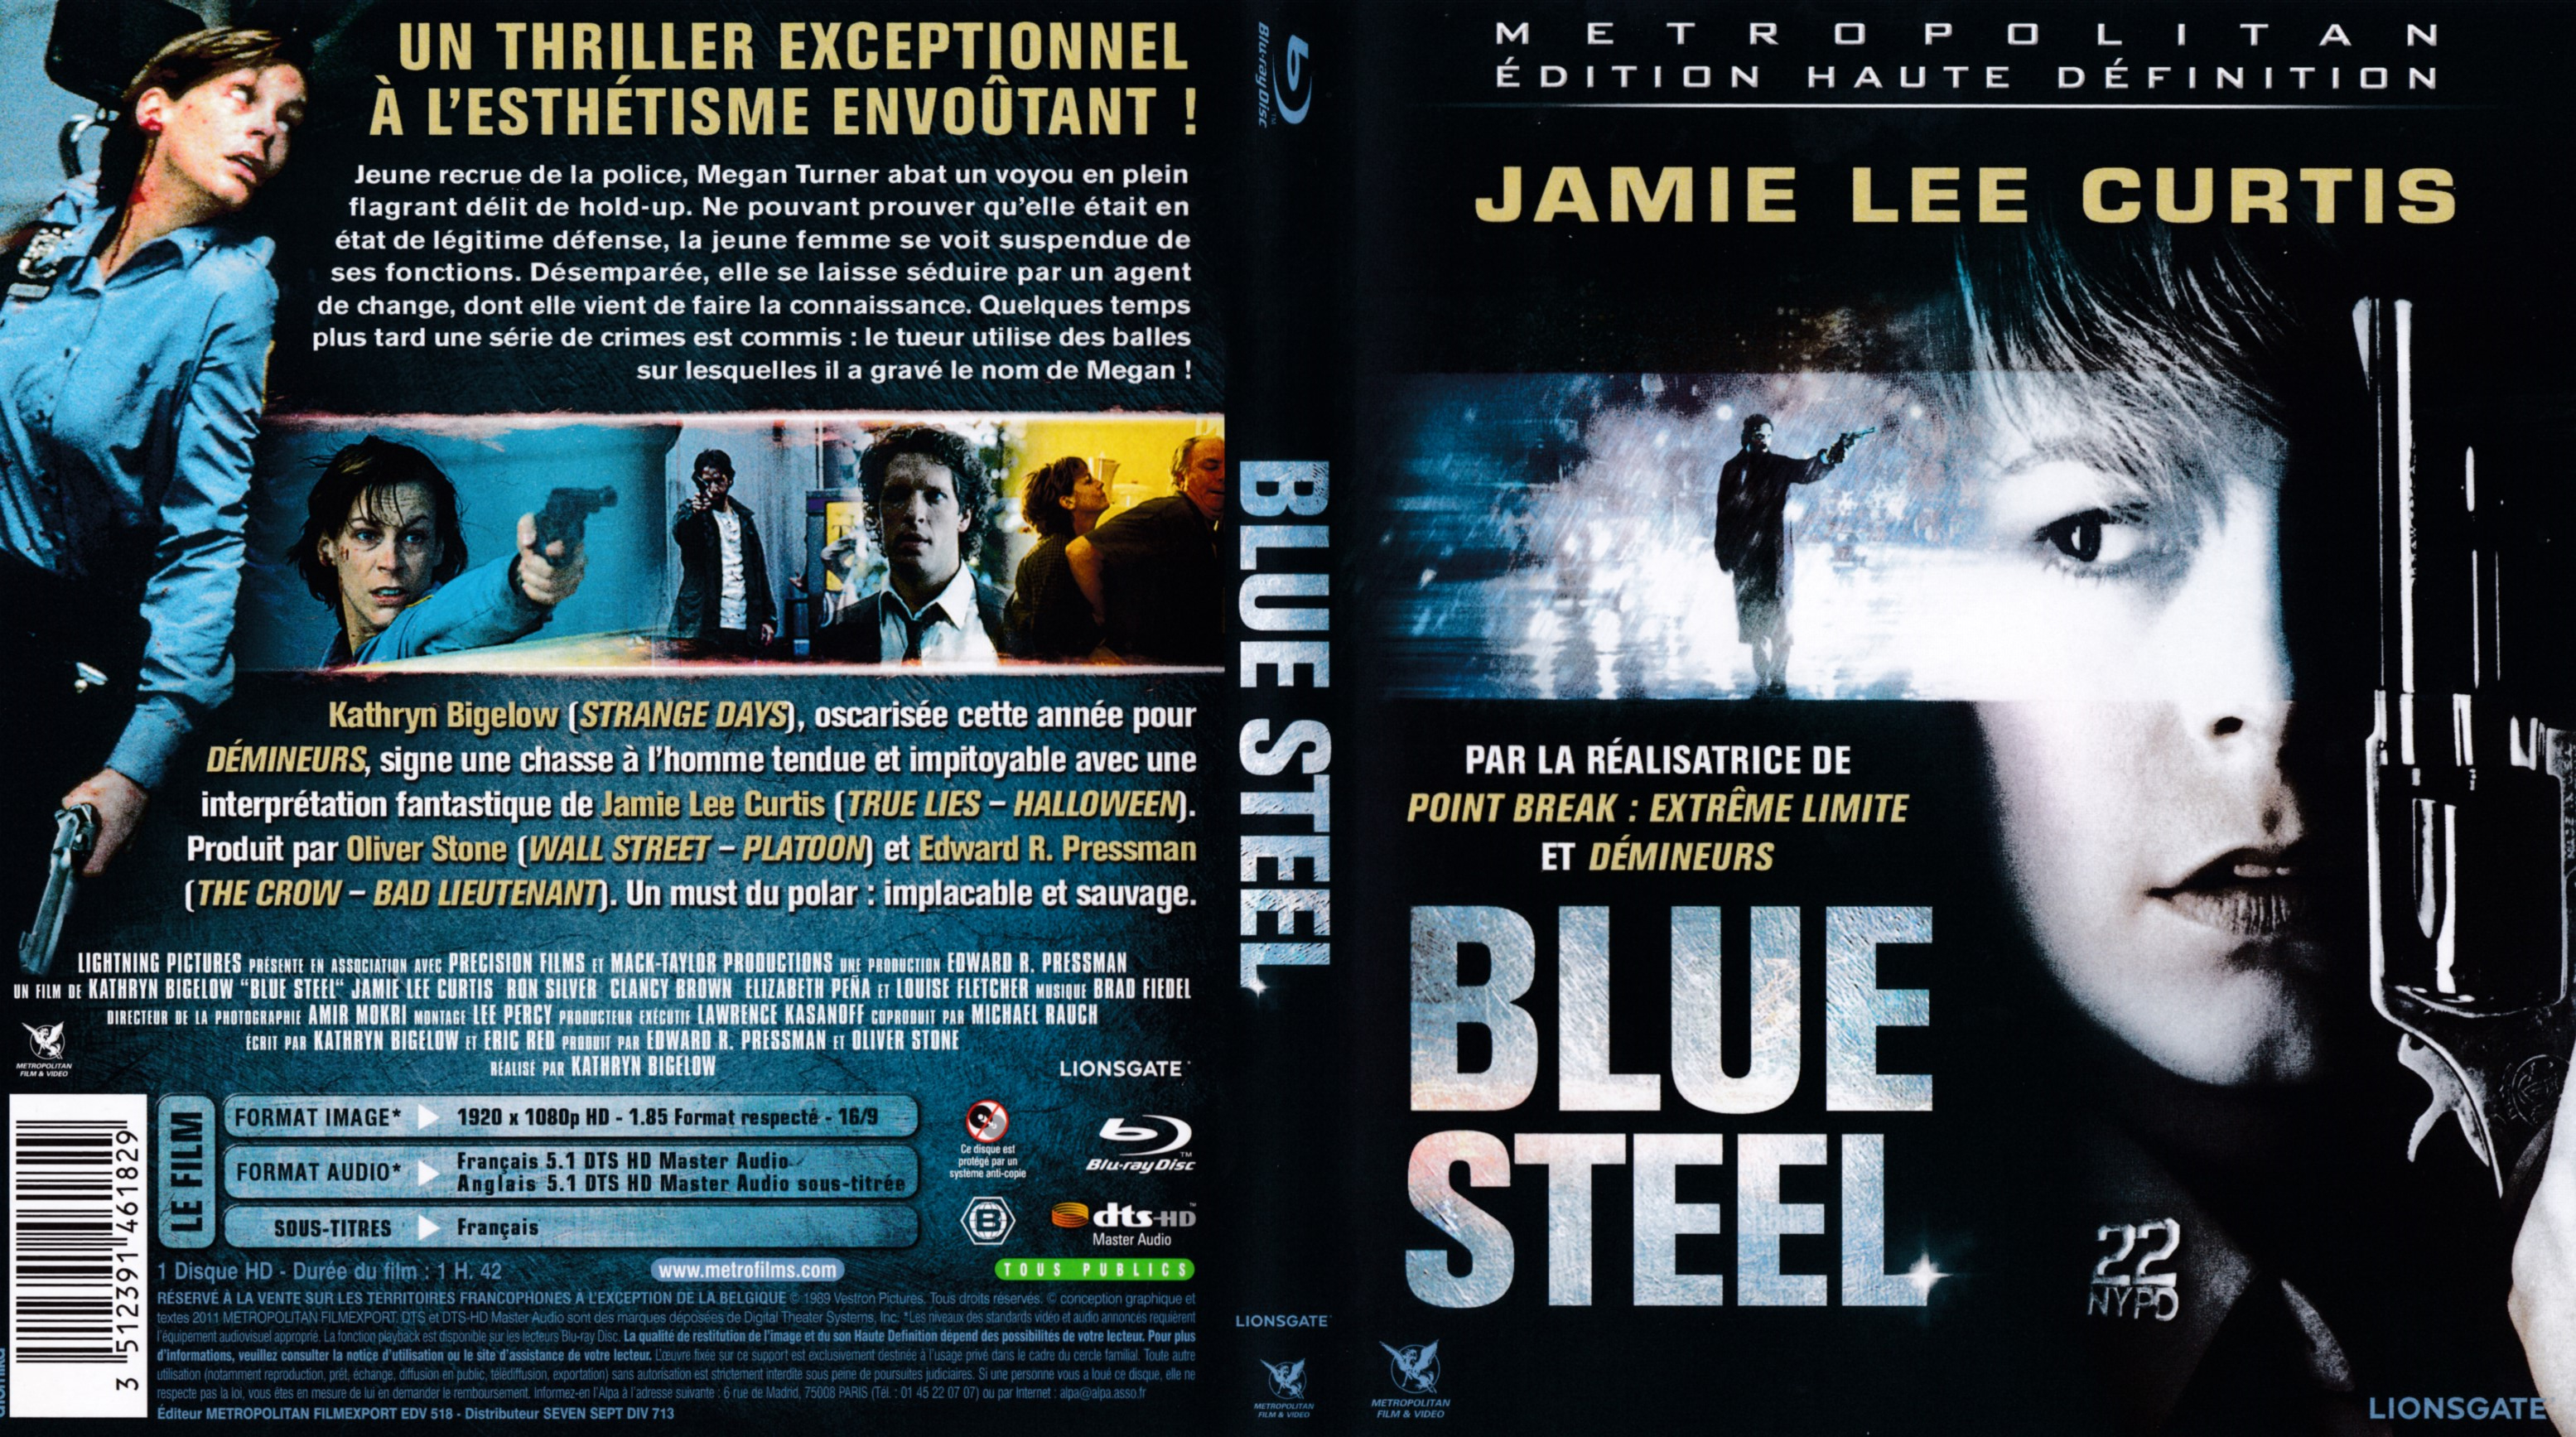 Jaquette DVD Blue Steel (BLU-RAY)